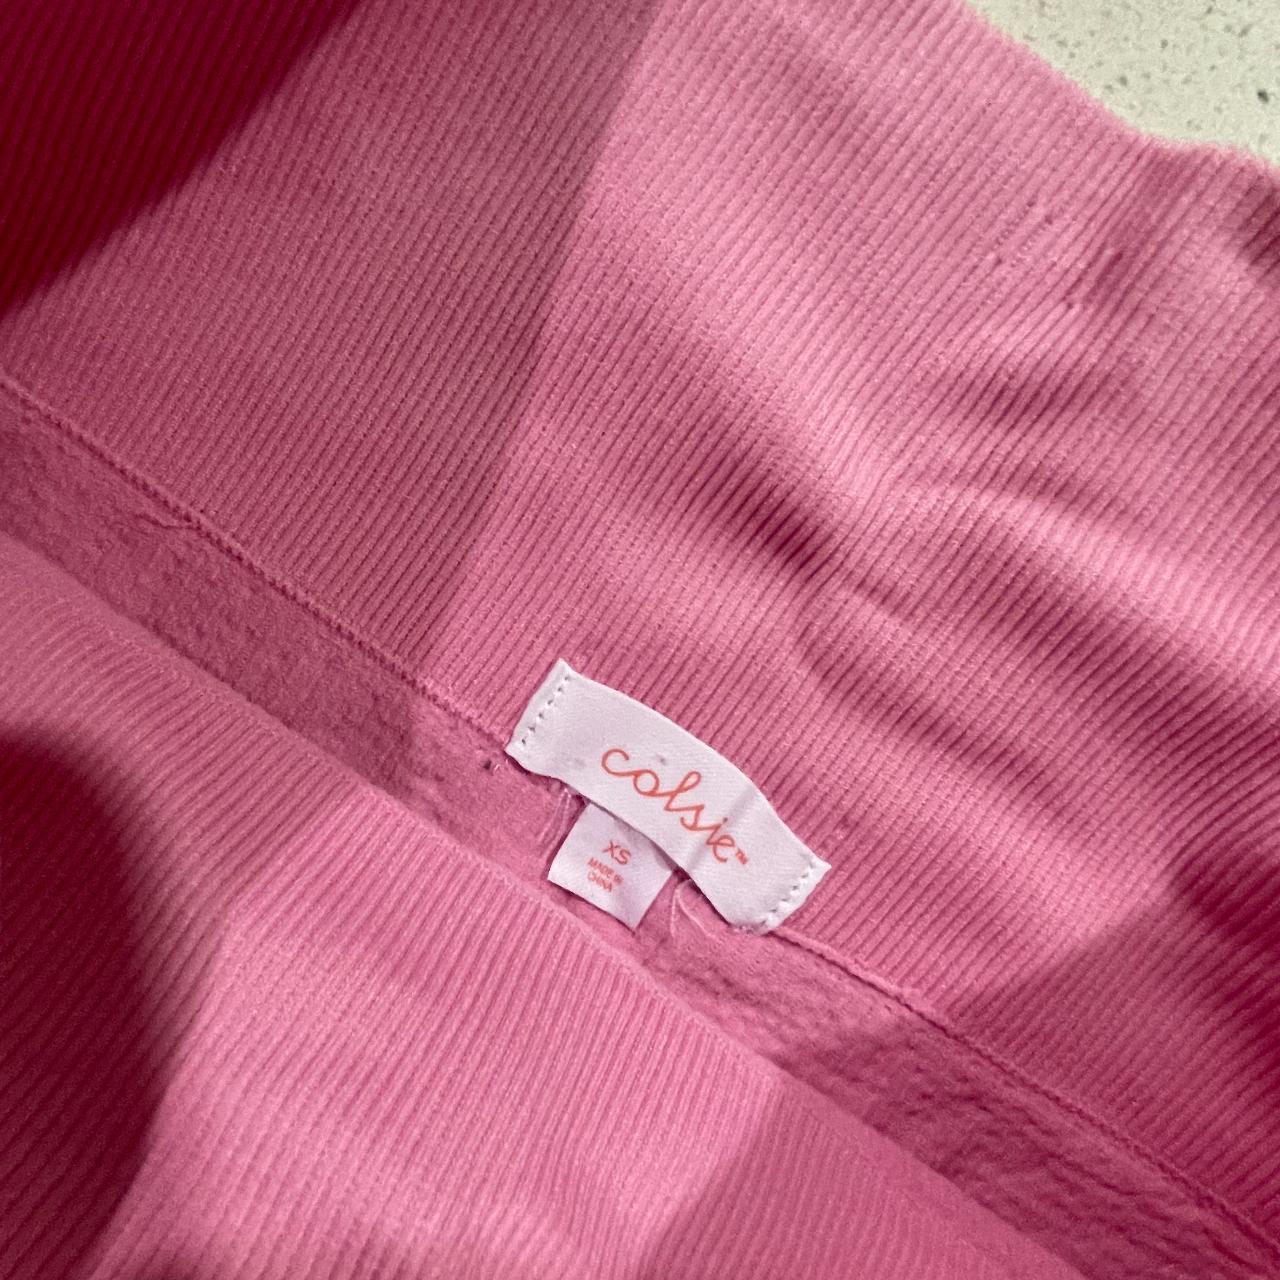 Target Women's Pink Shorts (2)